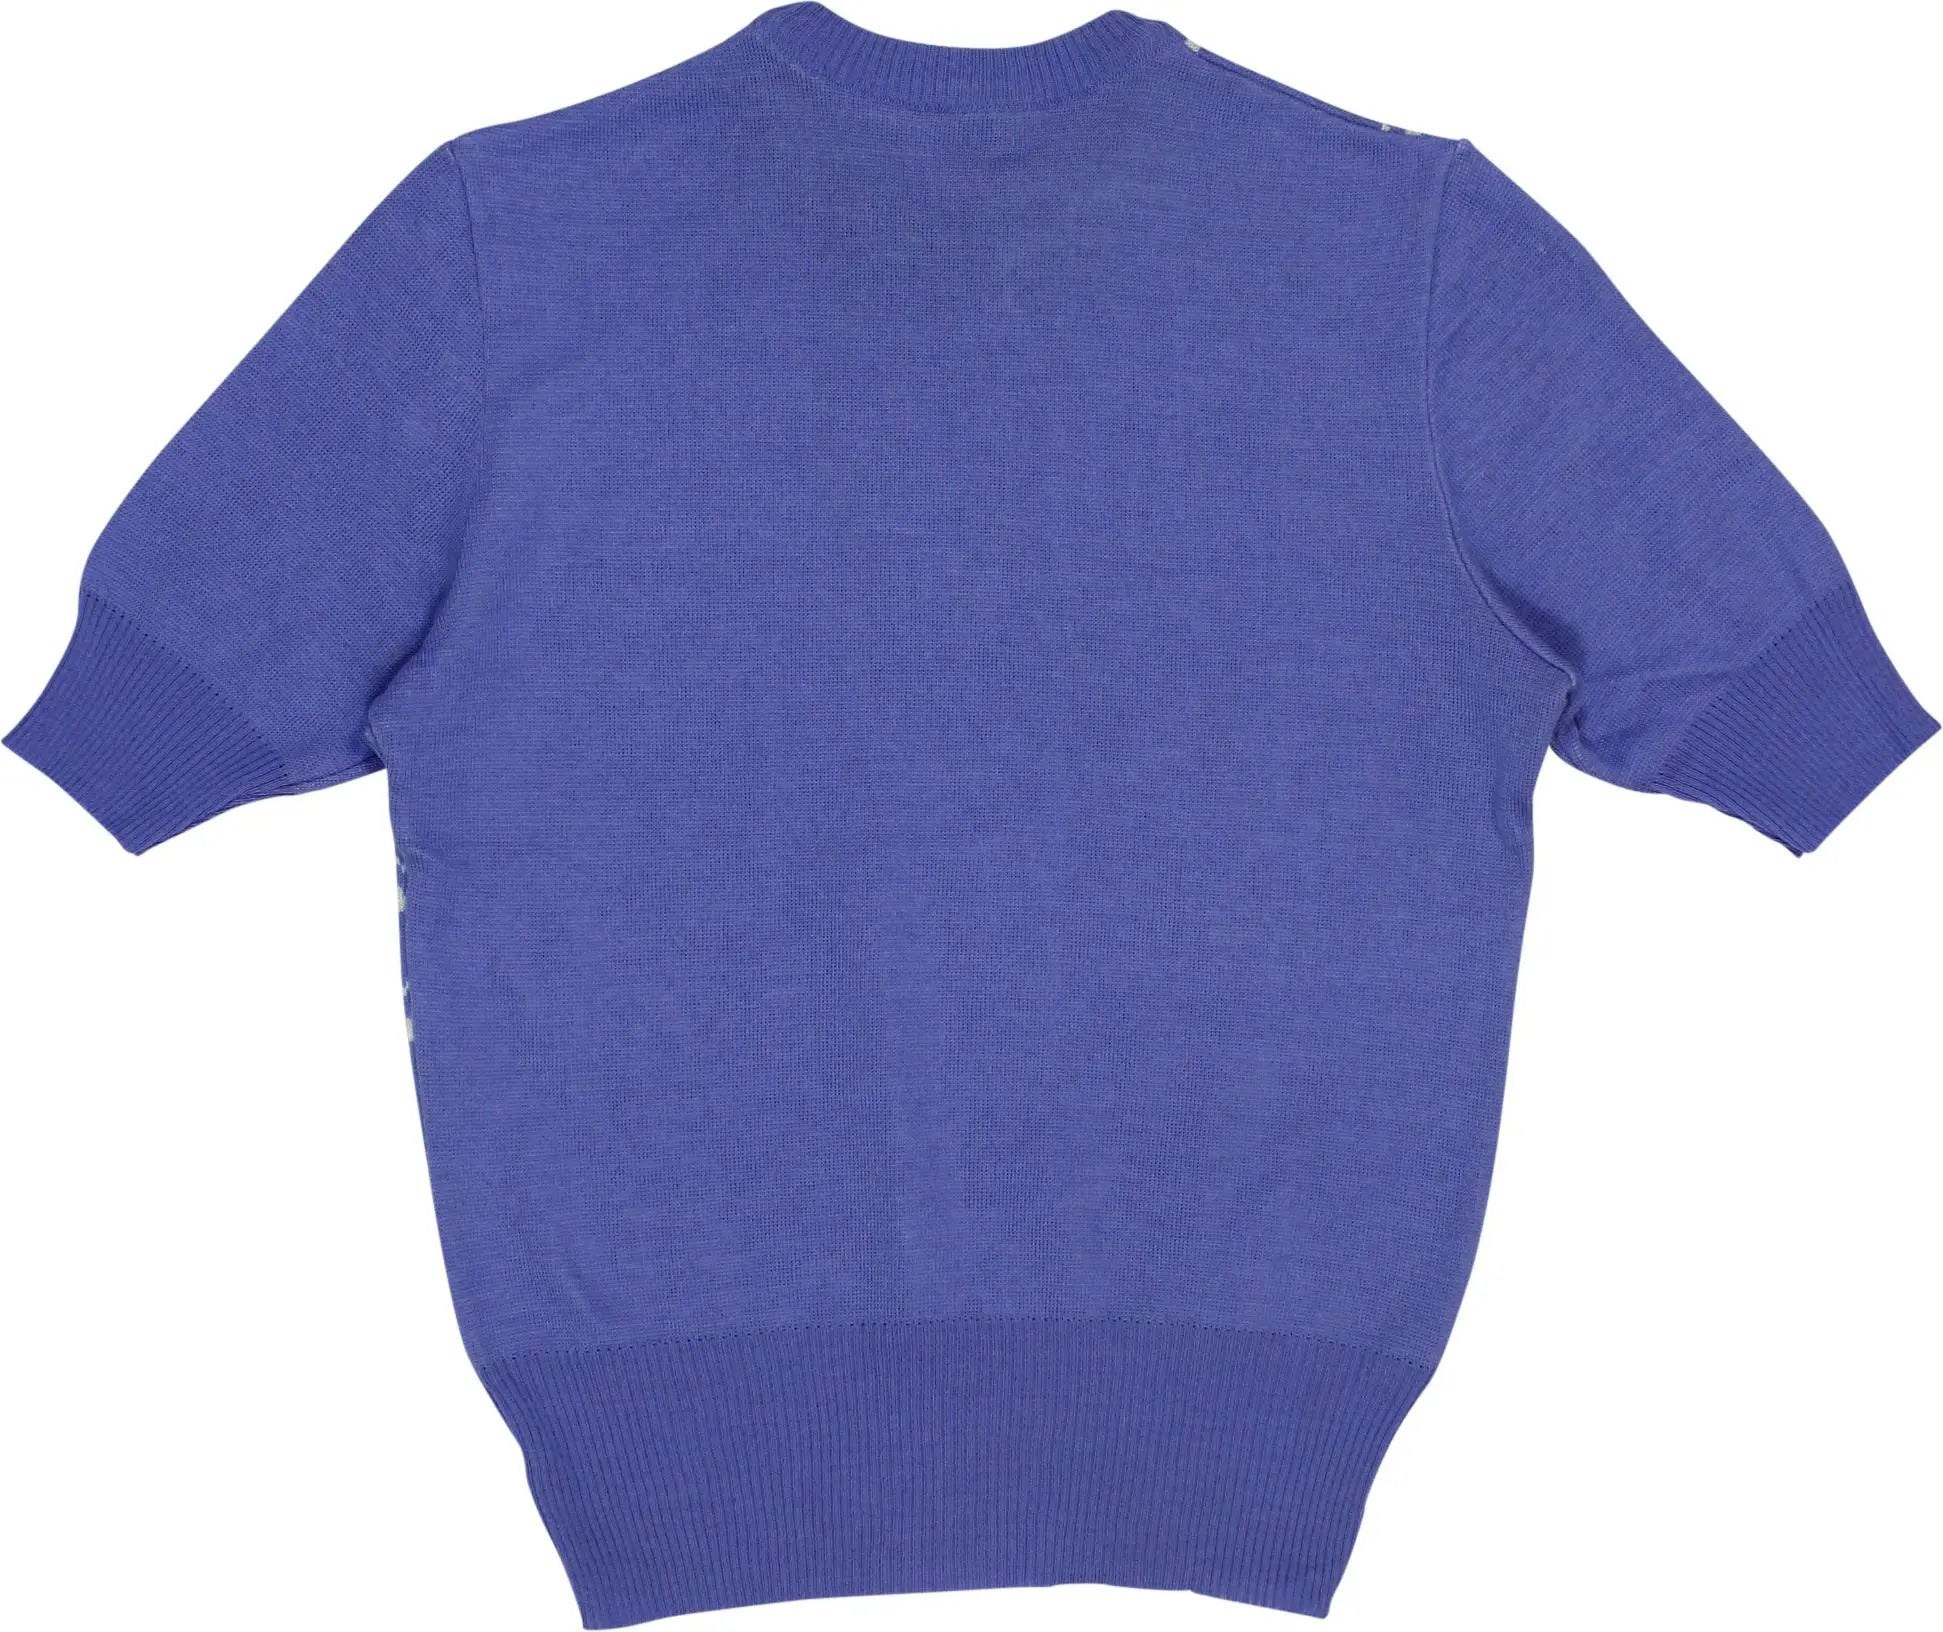 Röcker - Vintage Wool Blend Short Sleeve Jumper- ThriftTale.com - Vintage and second handclothing